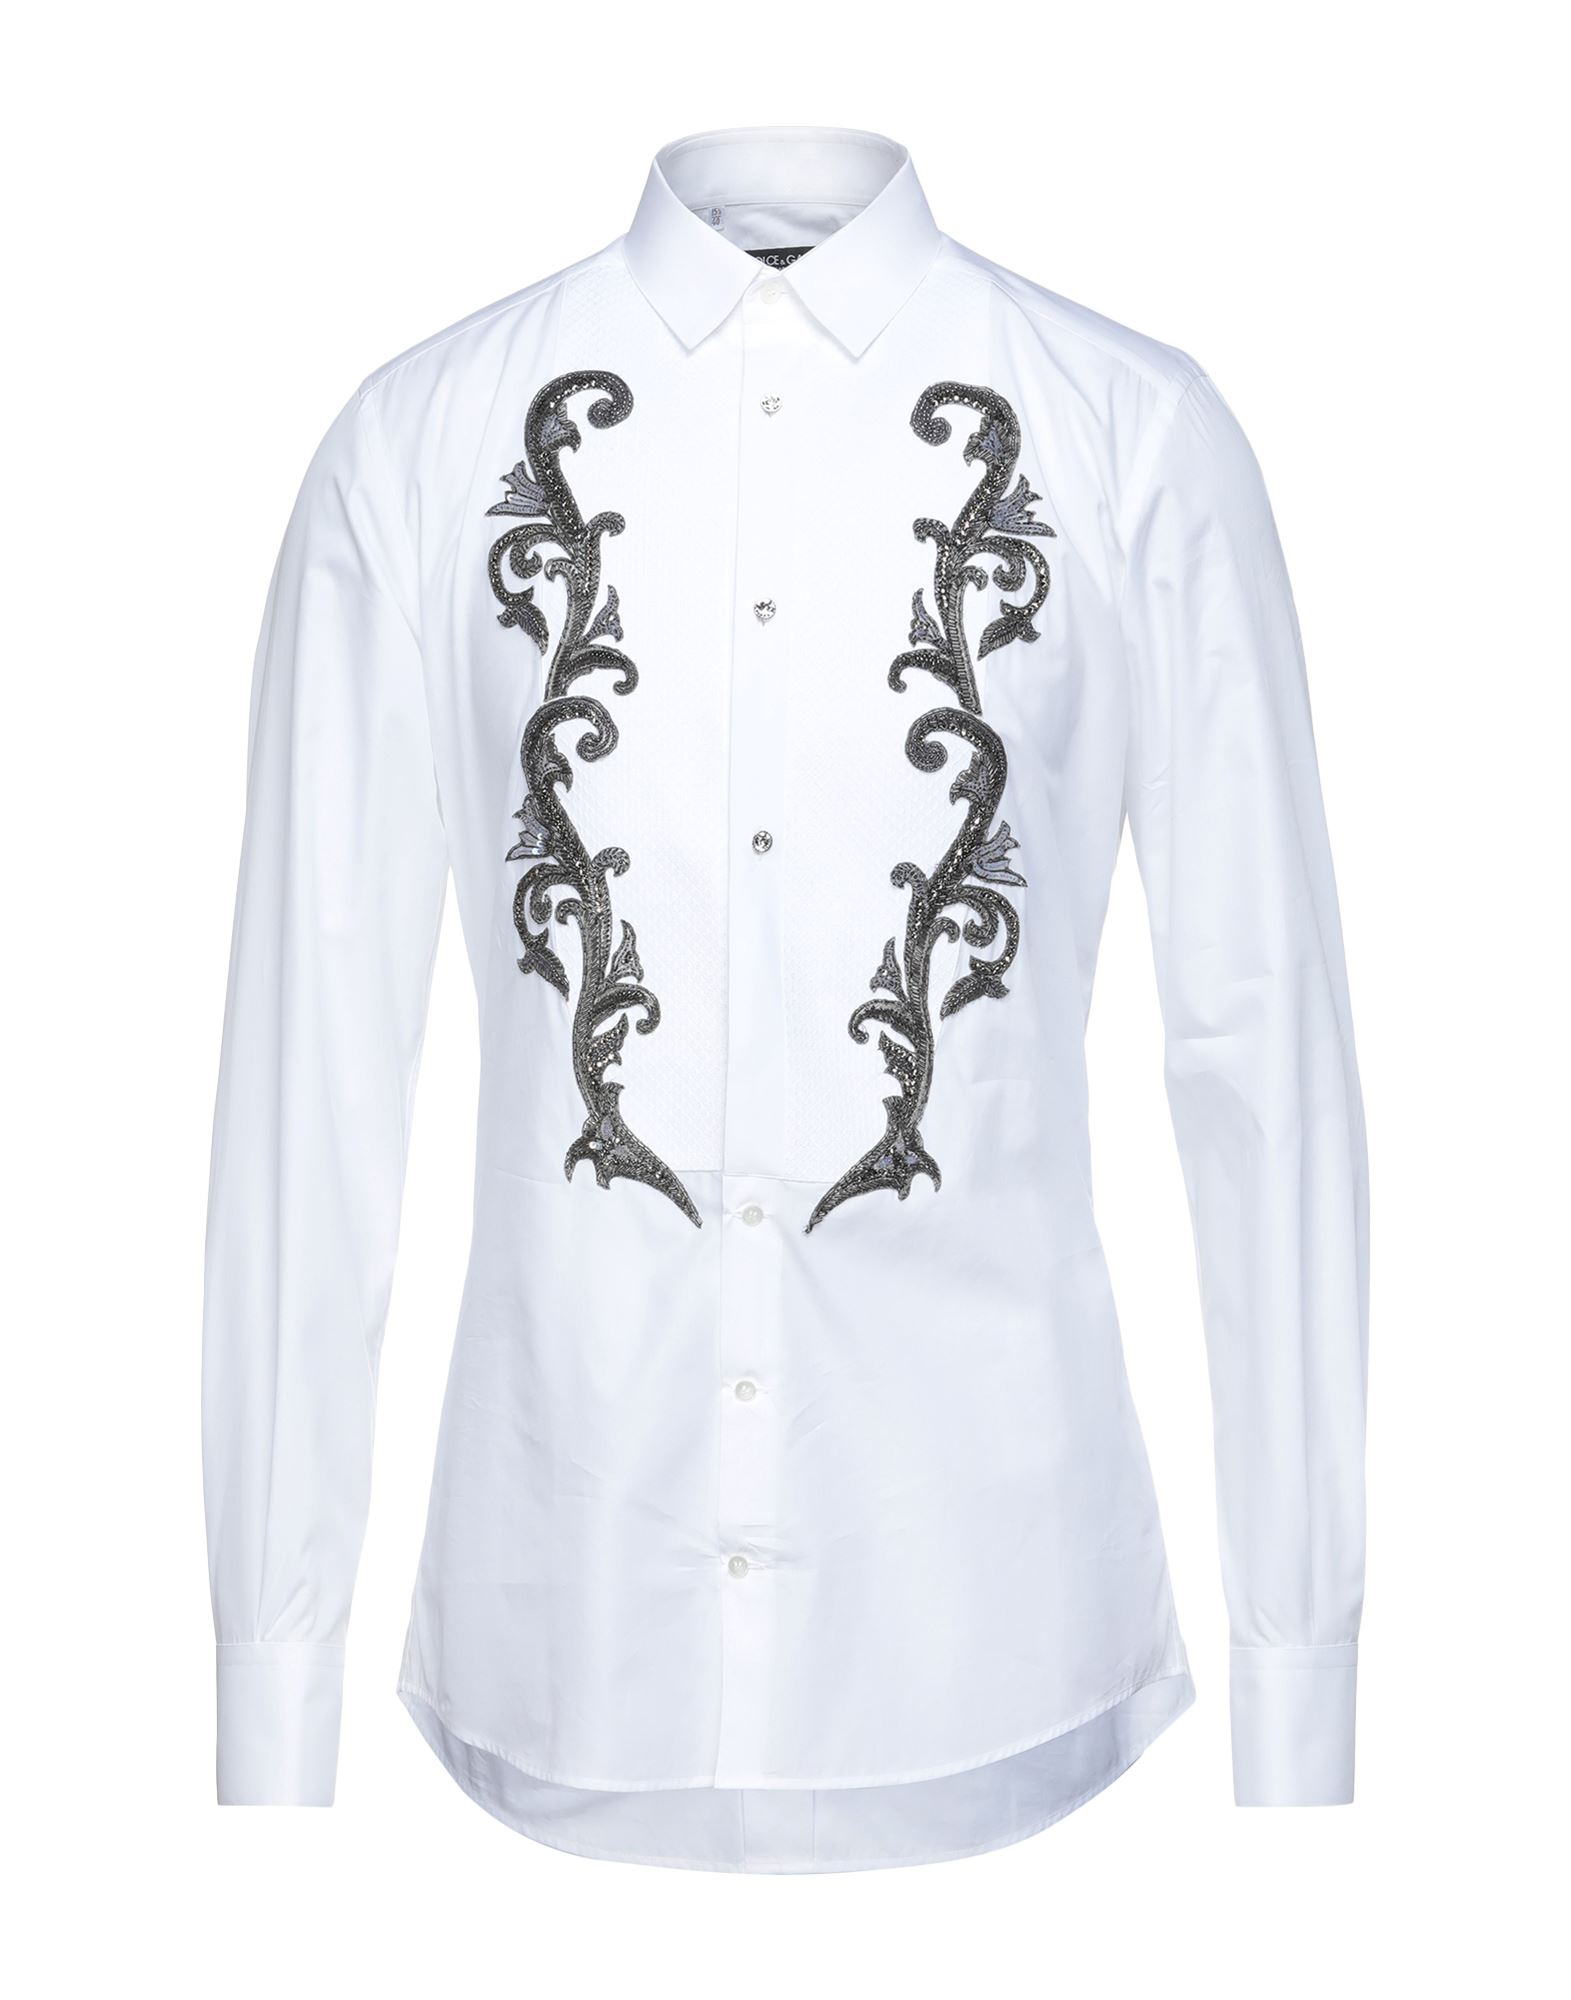 ドルチェ＆ガッバーナ(Dolce&Gabbana) メンズシャツ・ワイシャツ